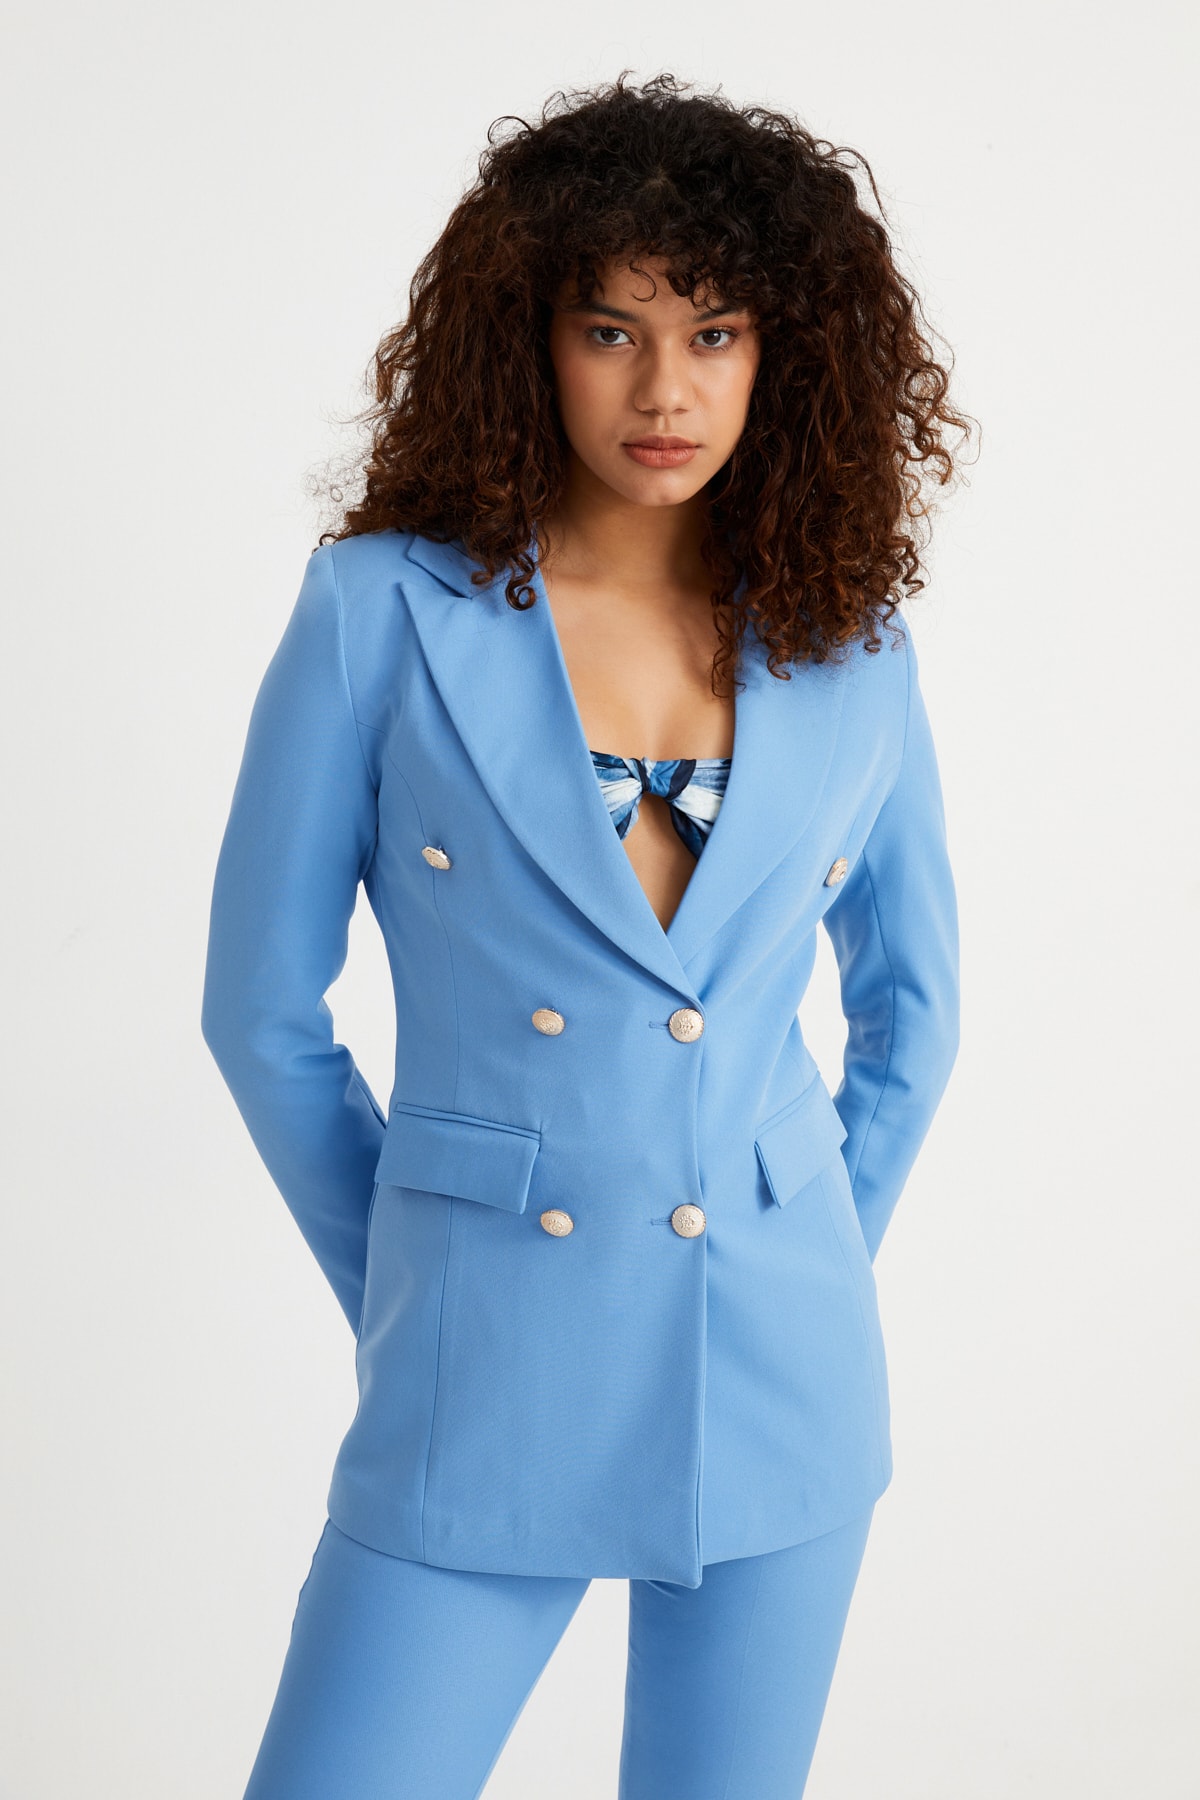 کت و شلوار آبی زنانه Rmz Style مدل کمربنددار